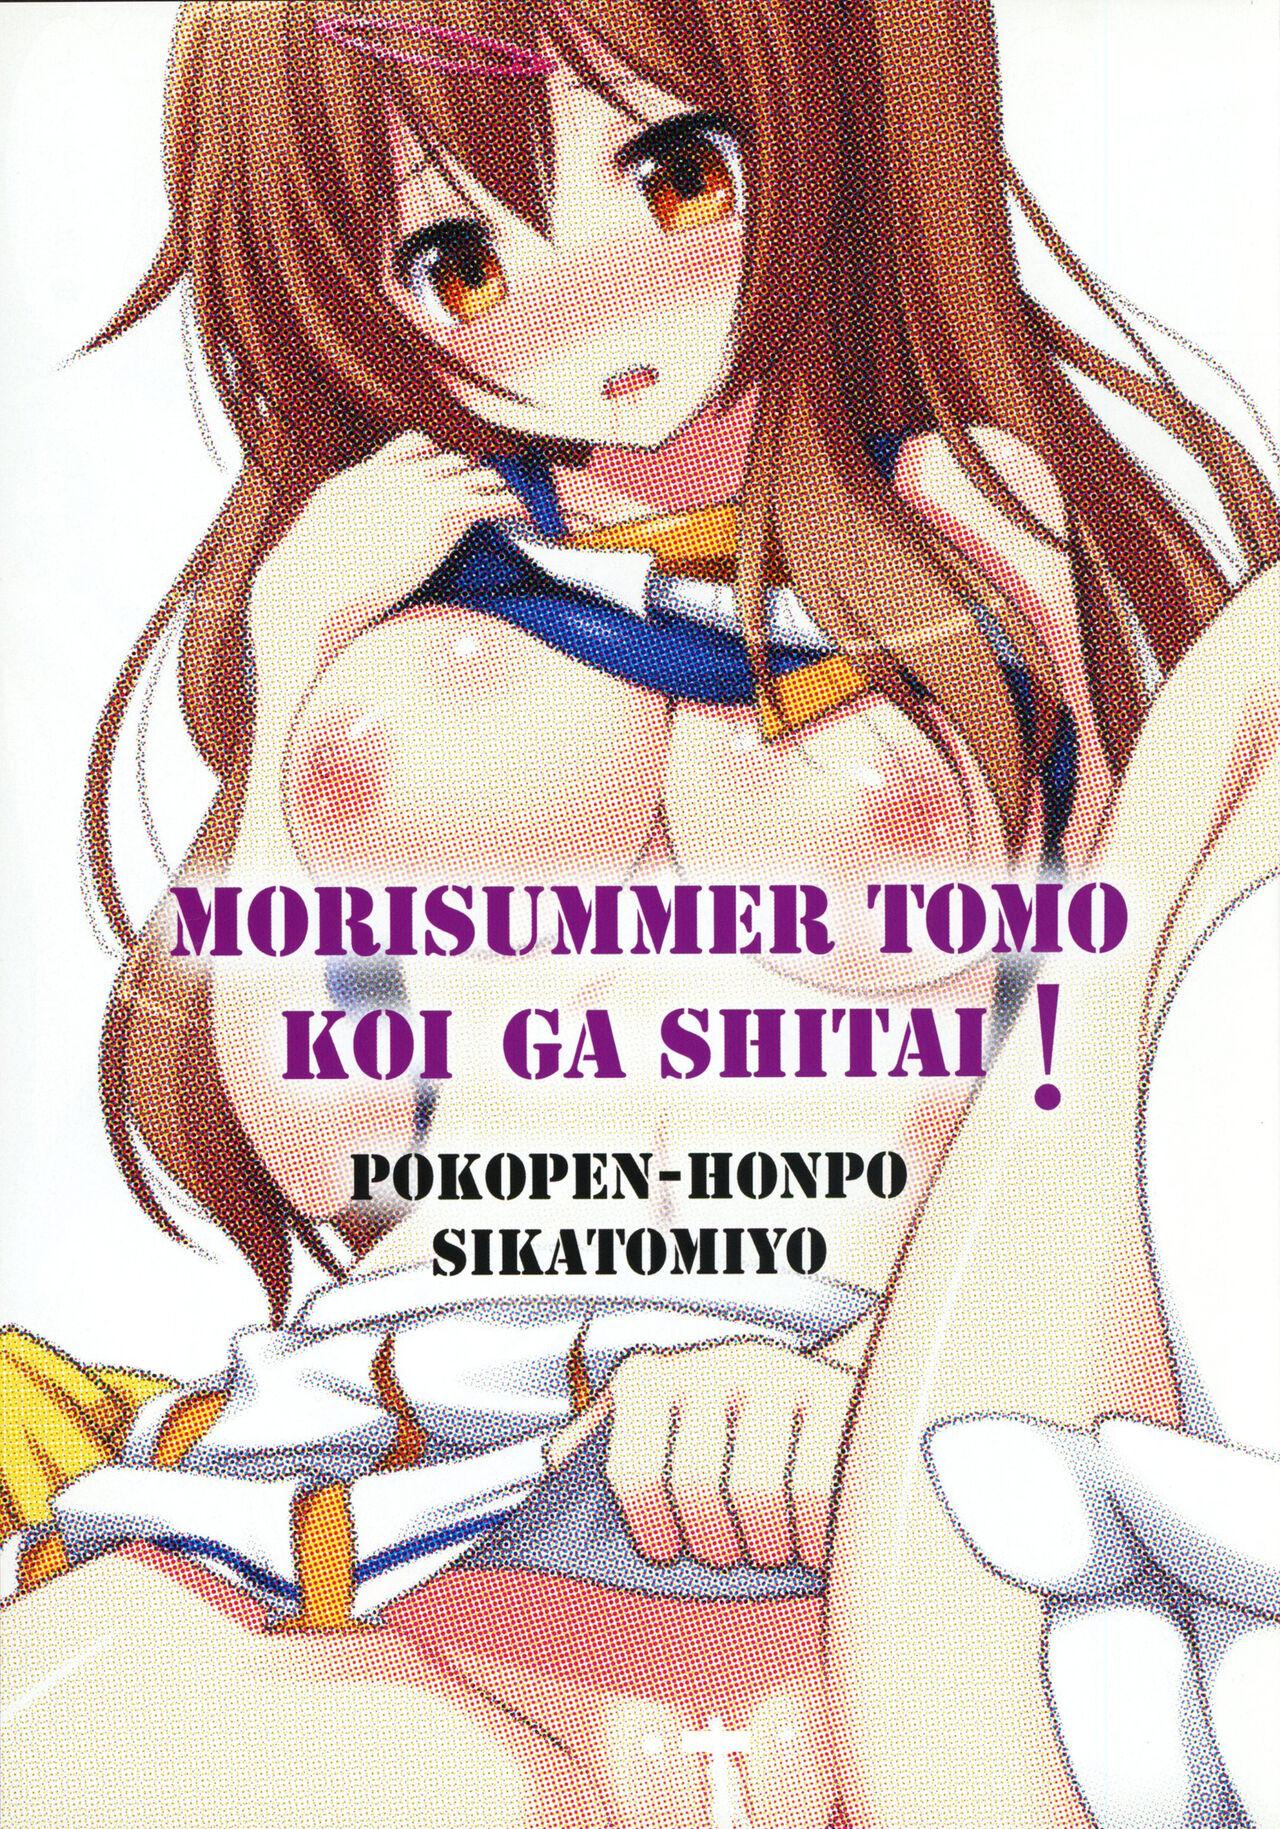 Big Pussy MoriSummer tomo KOI ga shitai - Chuunibyou demo koi ga shitai Casero - Picture 2